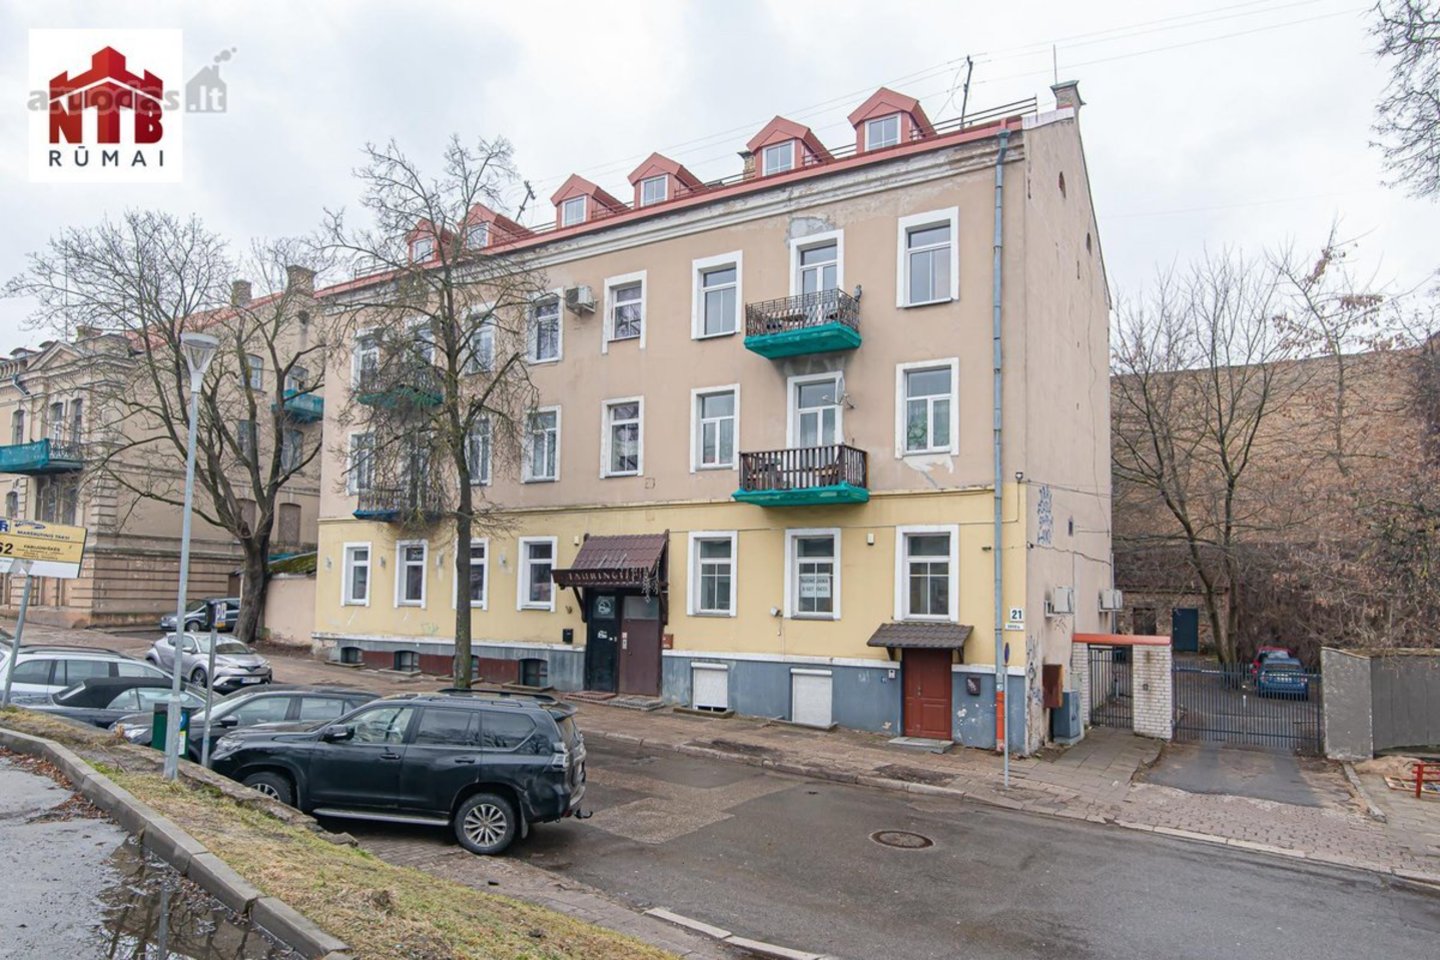  Ieva Swan išnuomoja vieno kambario butą Vilniaus senamiestyje.<br> Aruodas.lt nuotr.